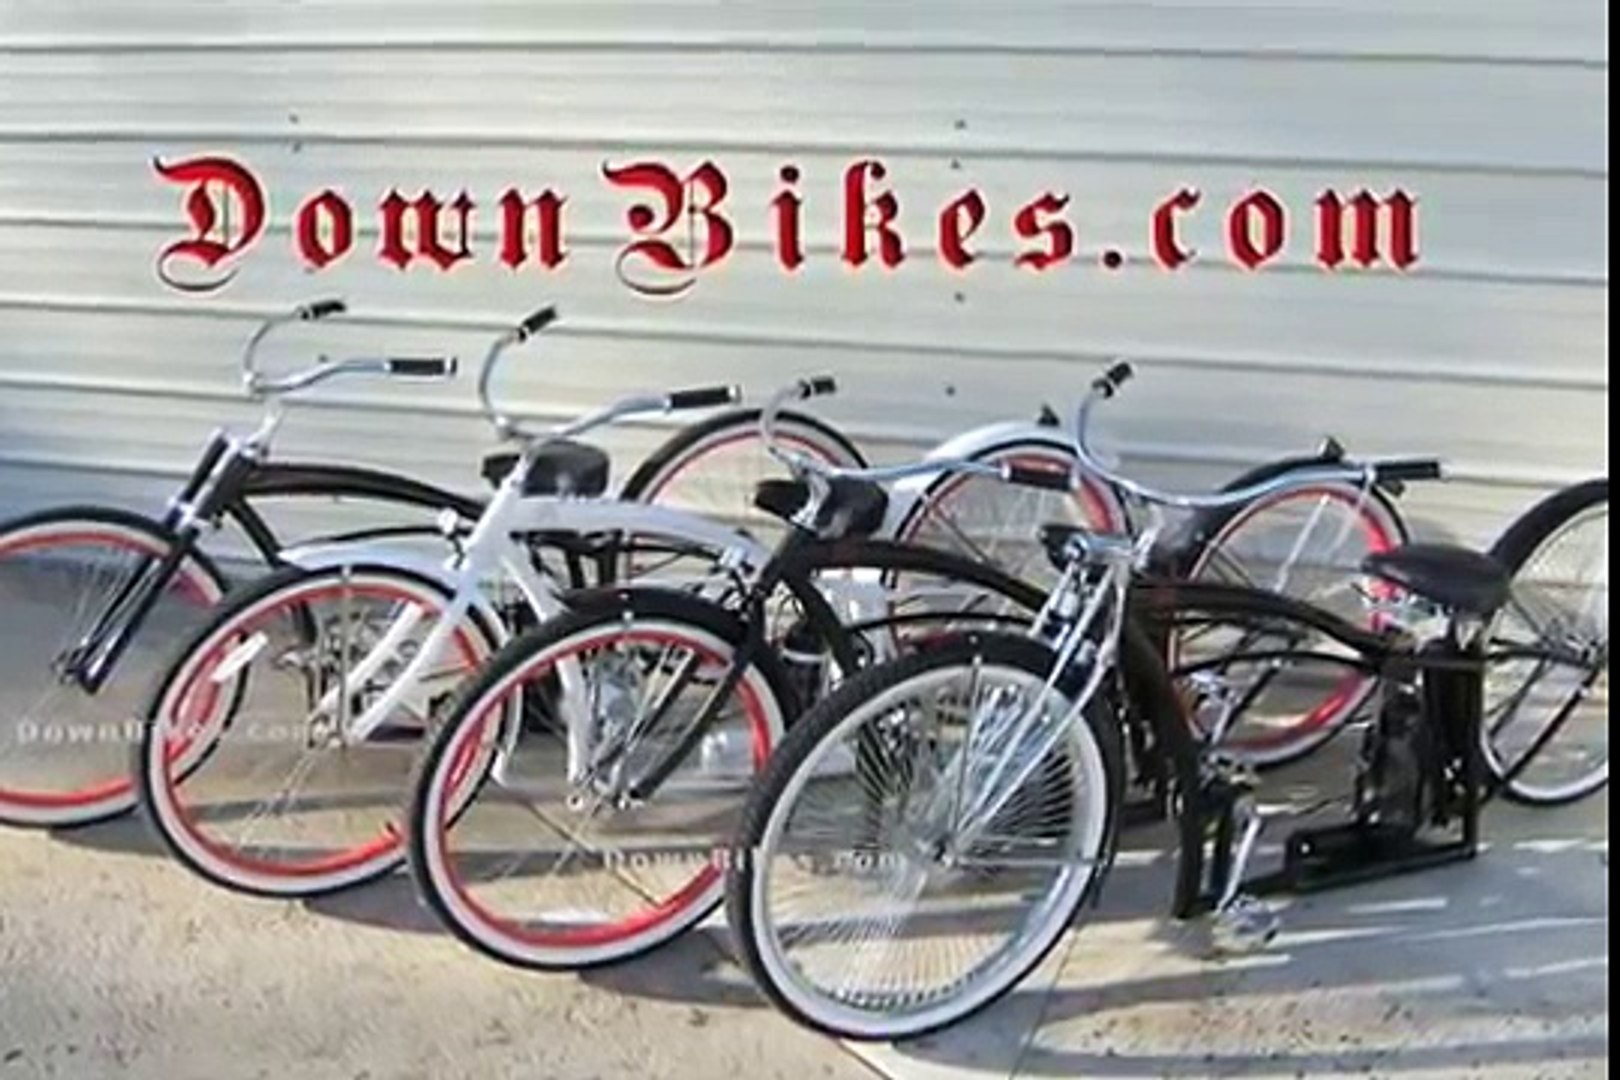 lowrider bike hydraulics